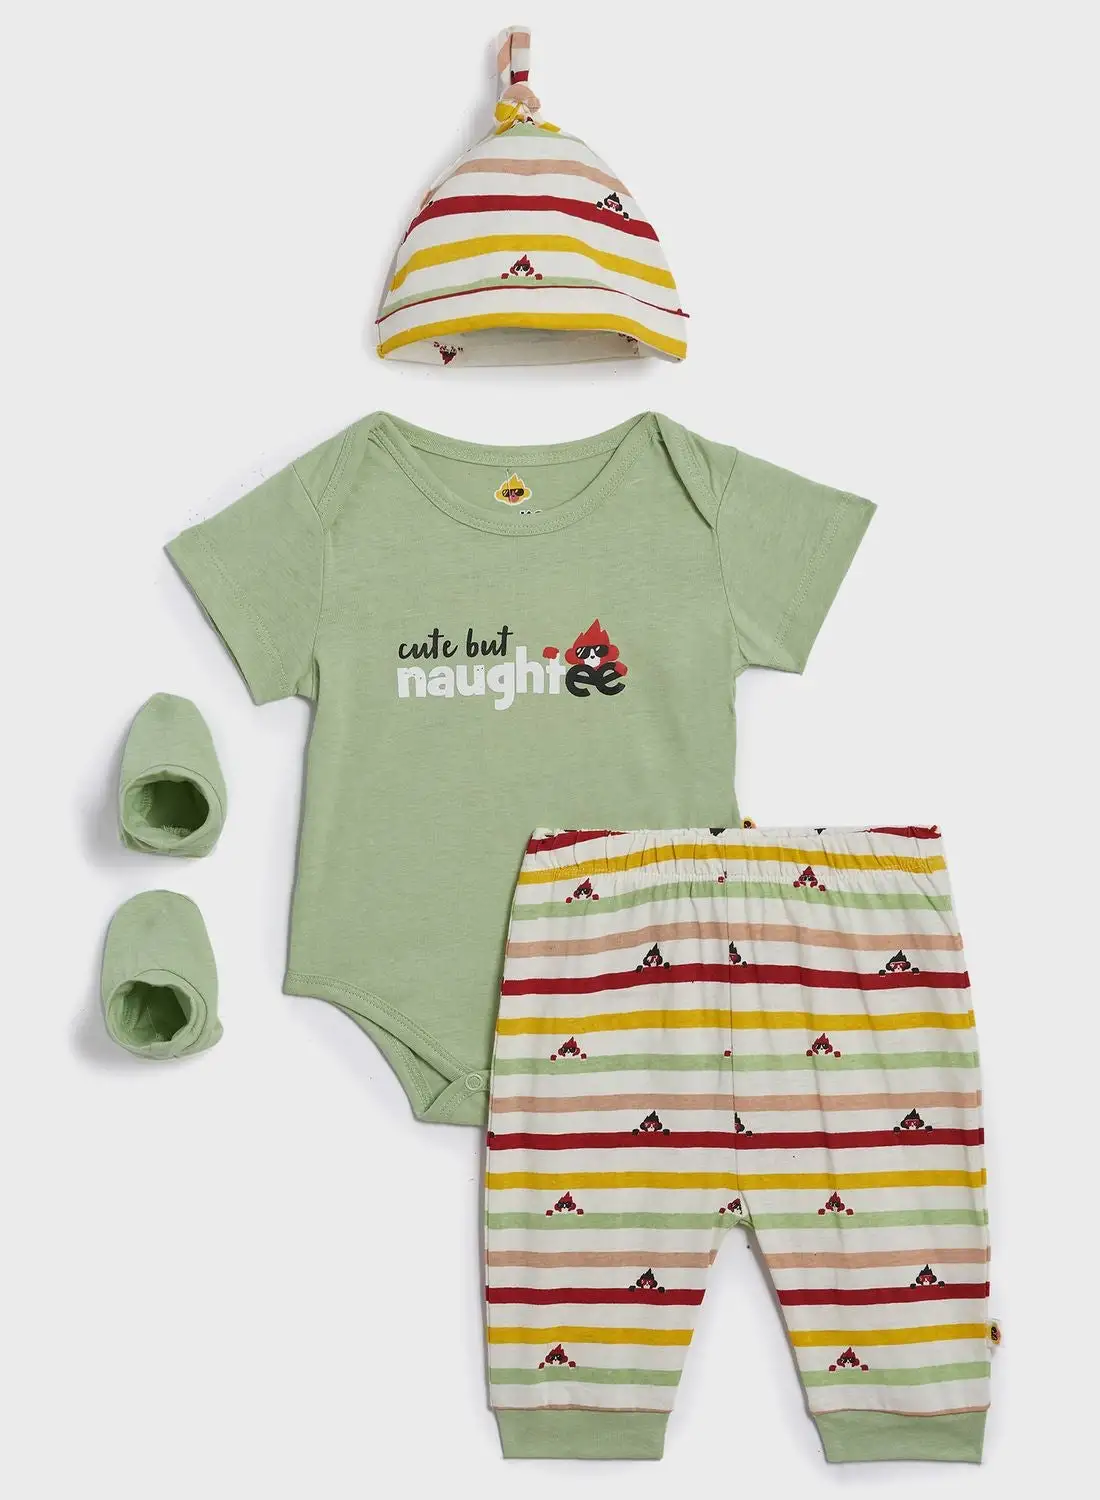 Cheekee Munkee Infant 4 Piece Gift Set